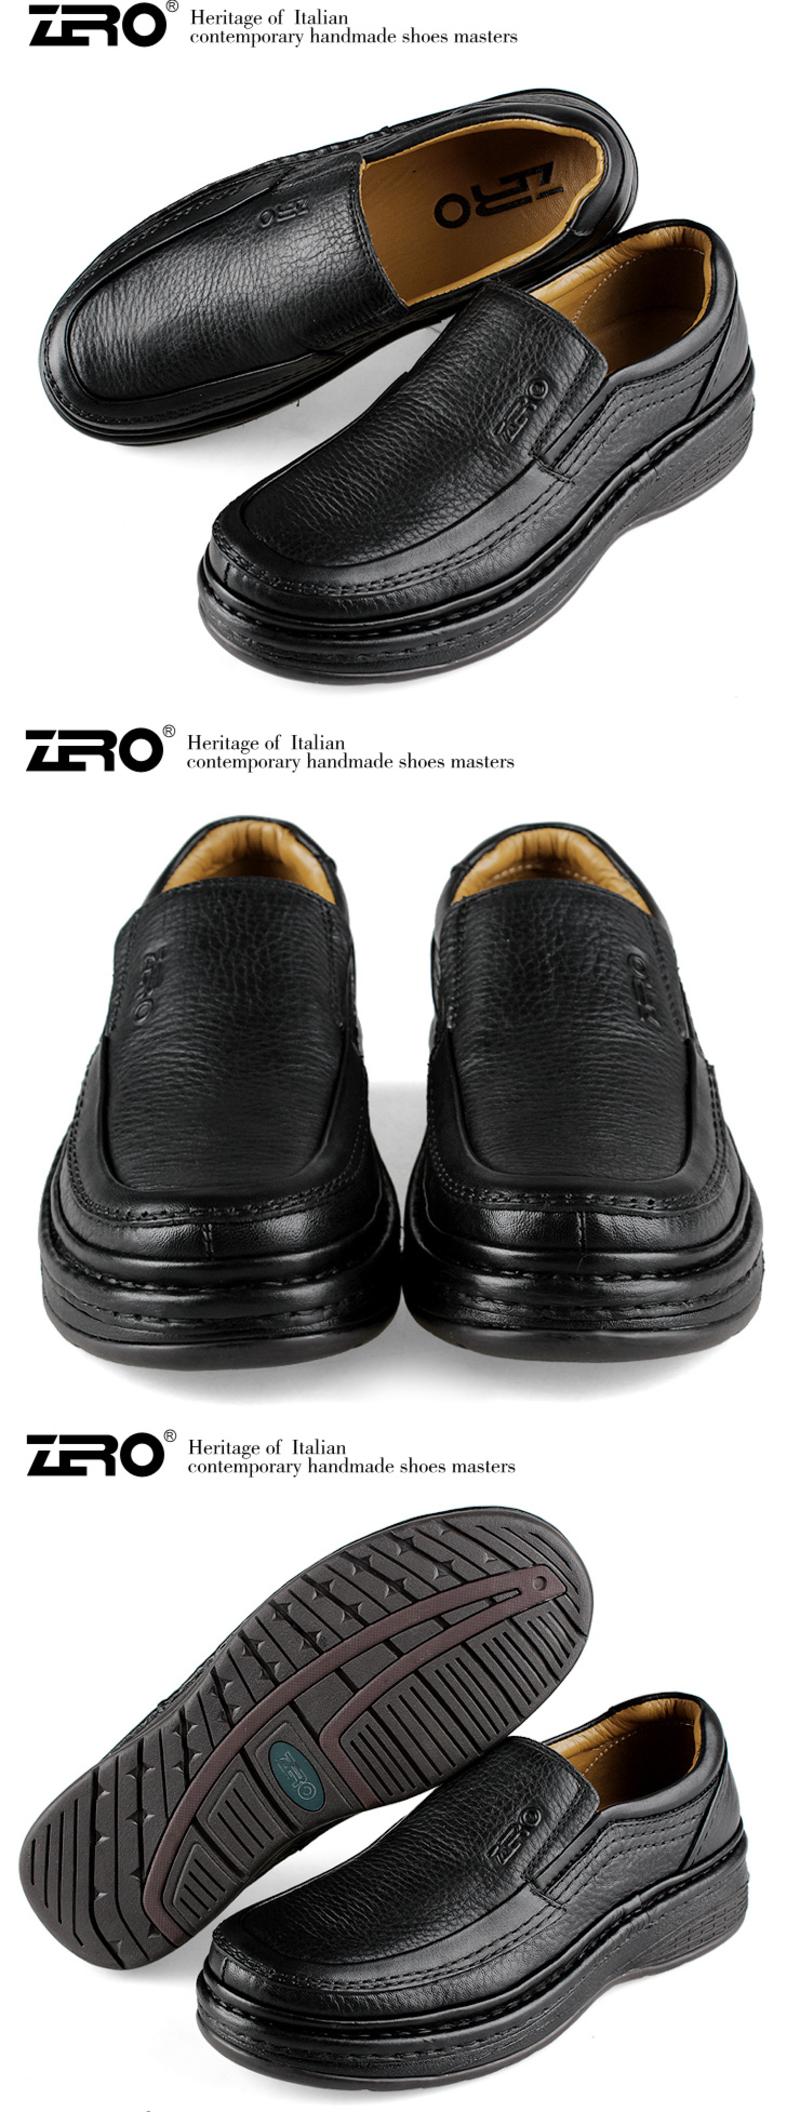 ZERO意大利零度秋冬新品商务休闲鞋男士休闲鞋低帮鞋 93052